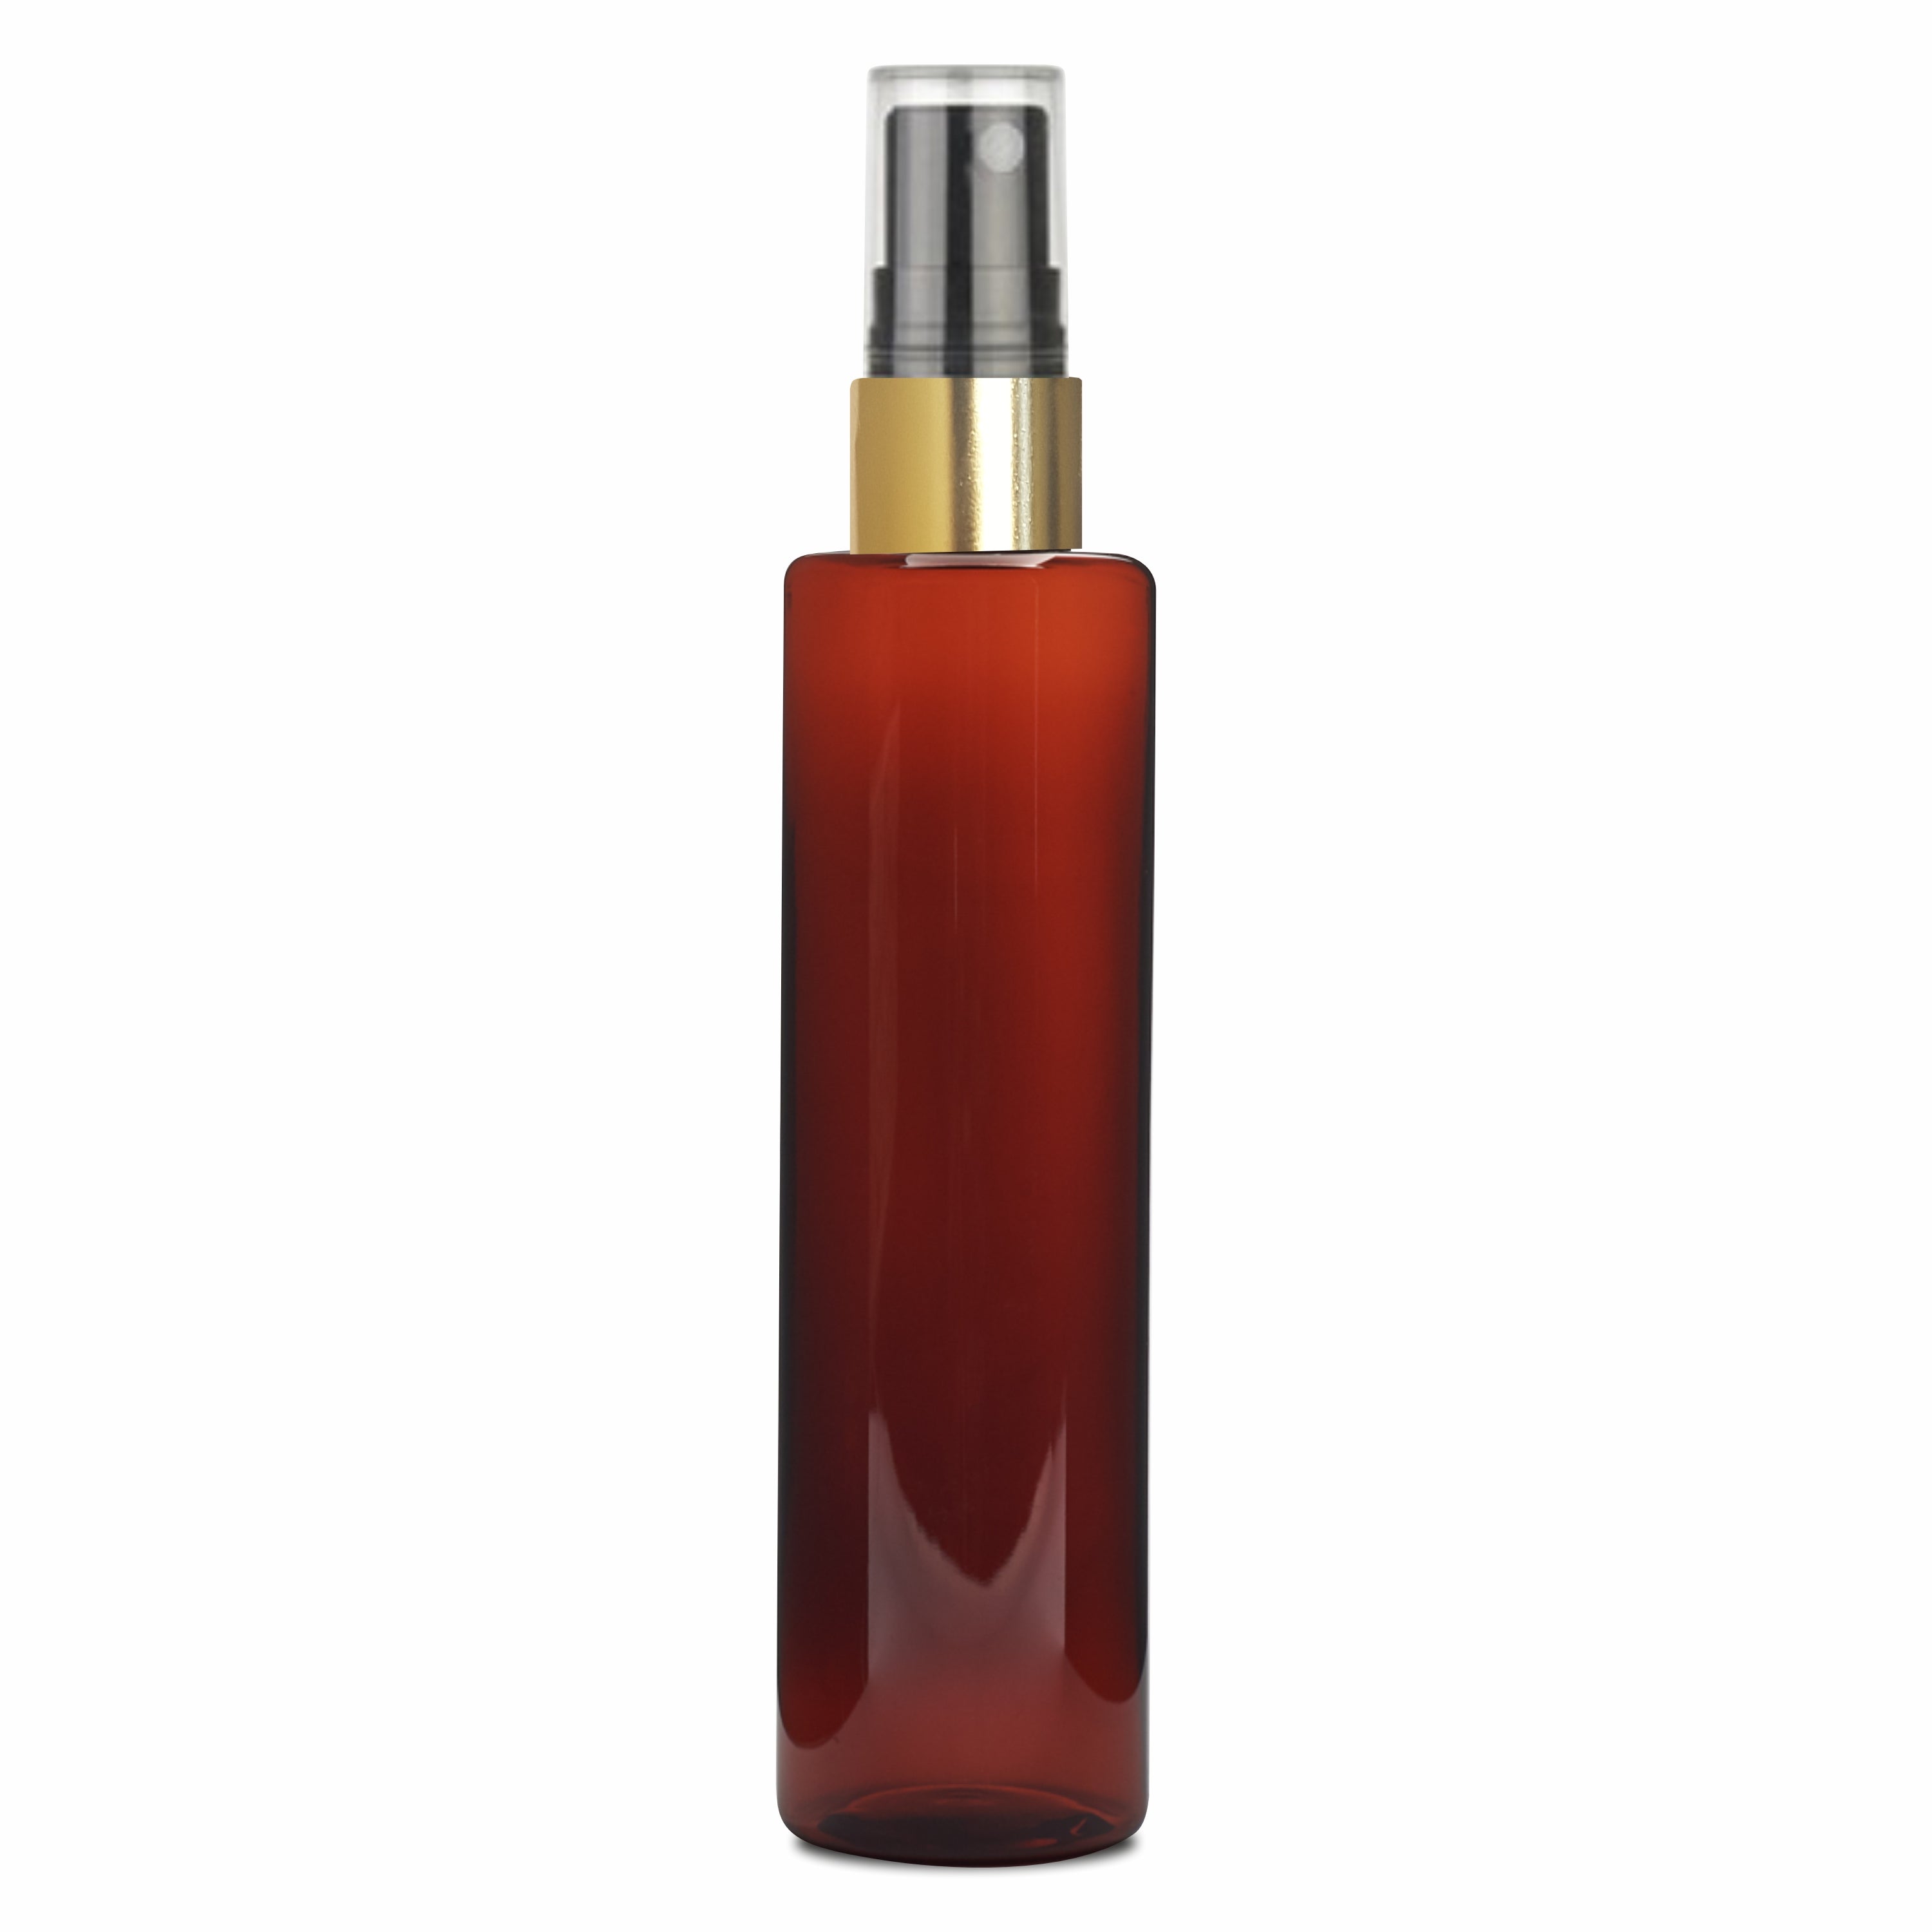 [ZMA34] Amber Color Round Premium Empty Bottle with Golden Black Mist Spray Pump 50ml, 100ML & 200ML